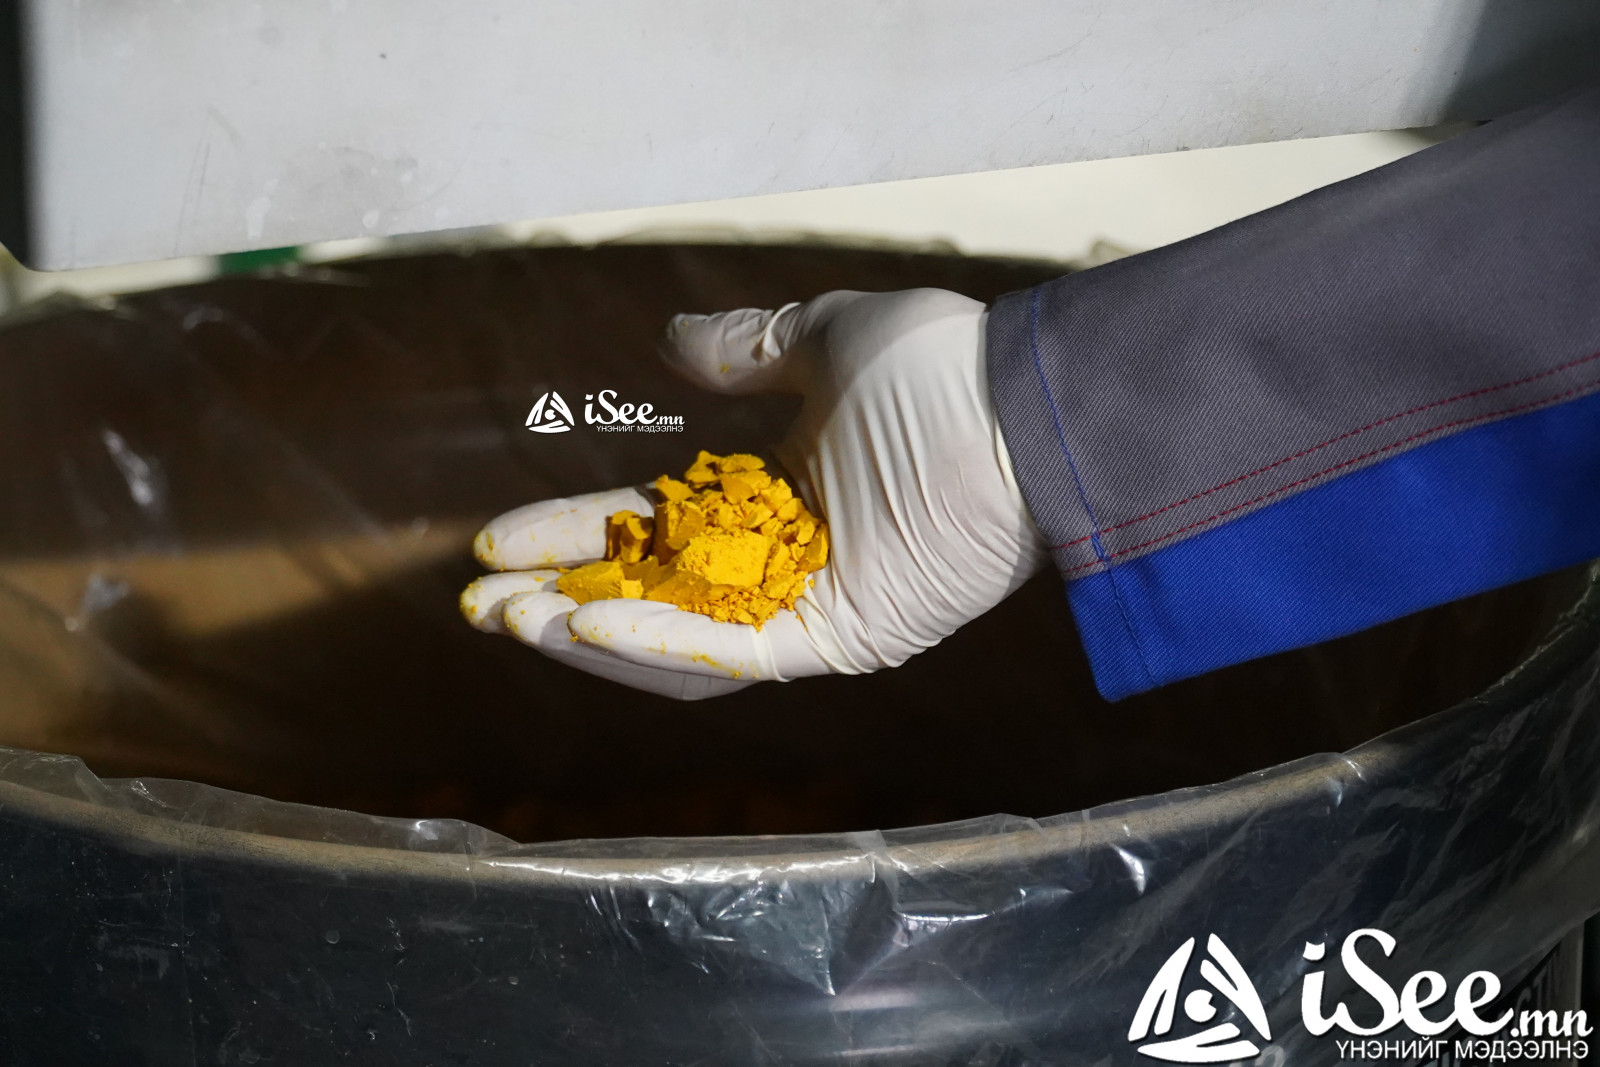 "Зөөвч-Овоо" ураны үйлдвэрээс гарган авч буй эцсийн бүтээгдэхүүн болох шар нунтаг